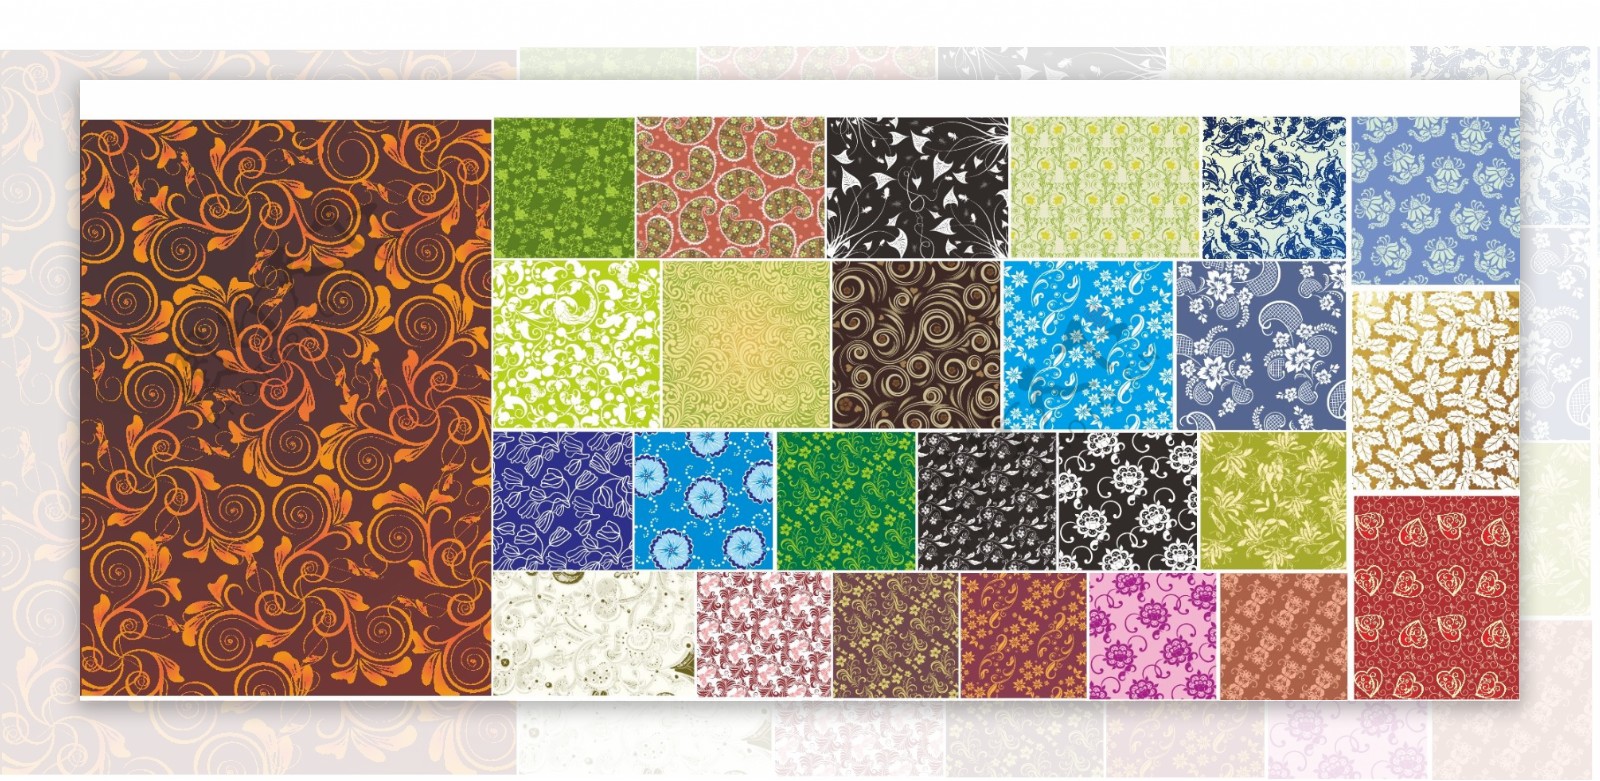 26种中国古典风格矢量花纹底图染织印刷设计素材